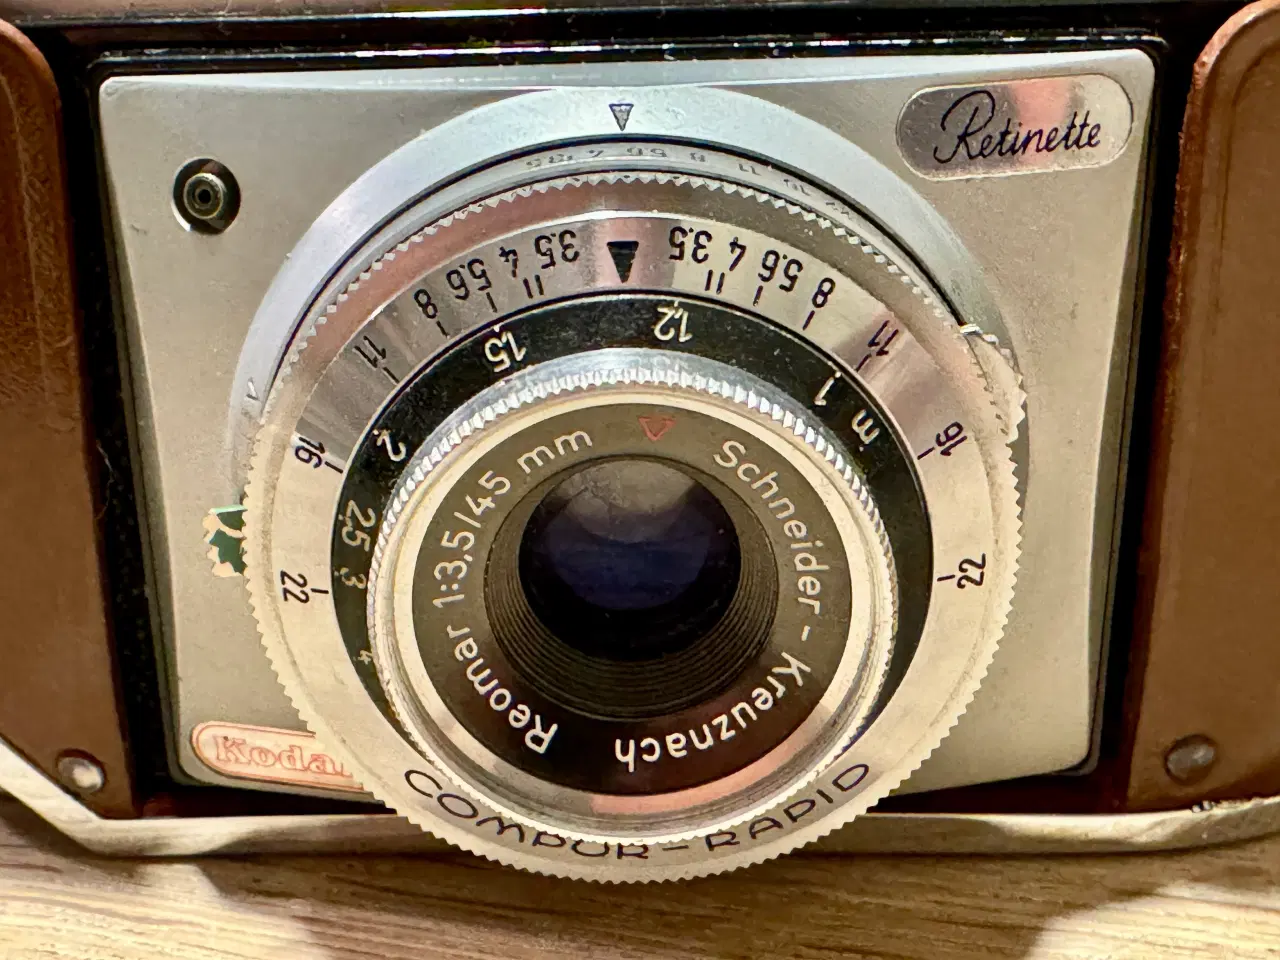 Billede 2 - Kodak Retinette kamera